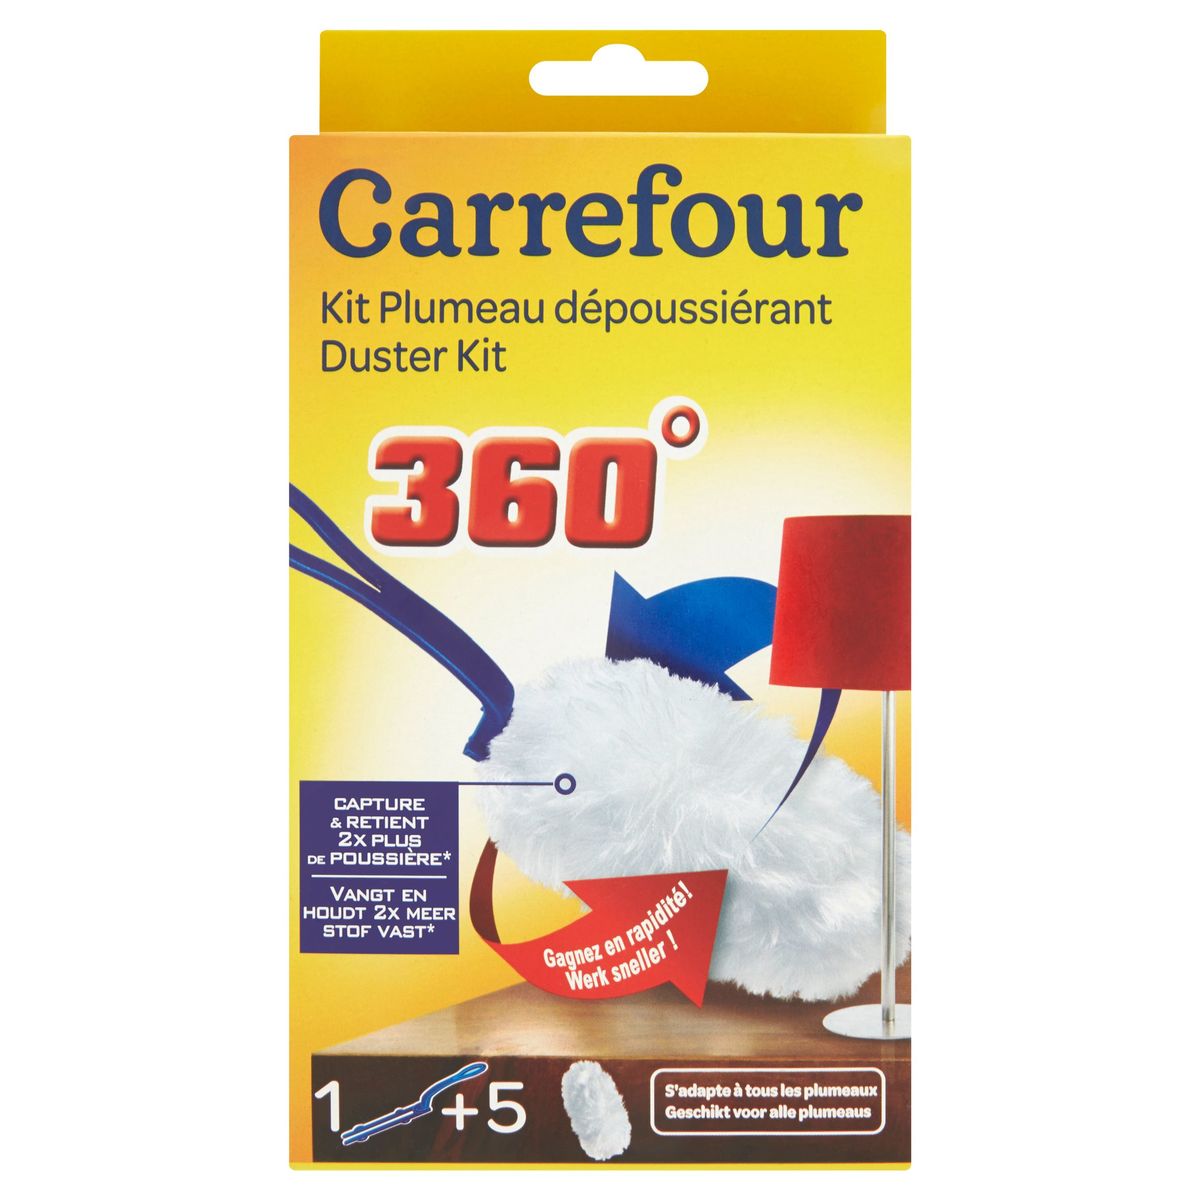 Carrefour Kit Plumeau dépoussiérant 360°